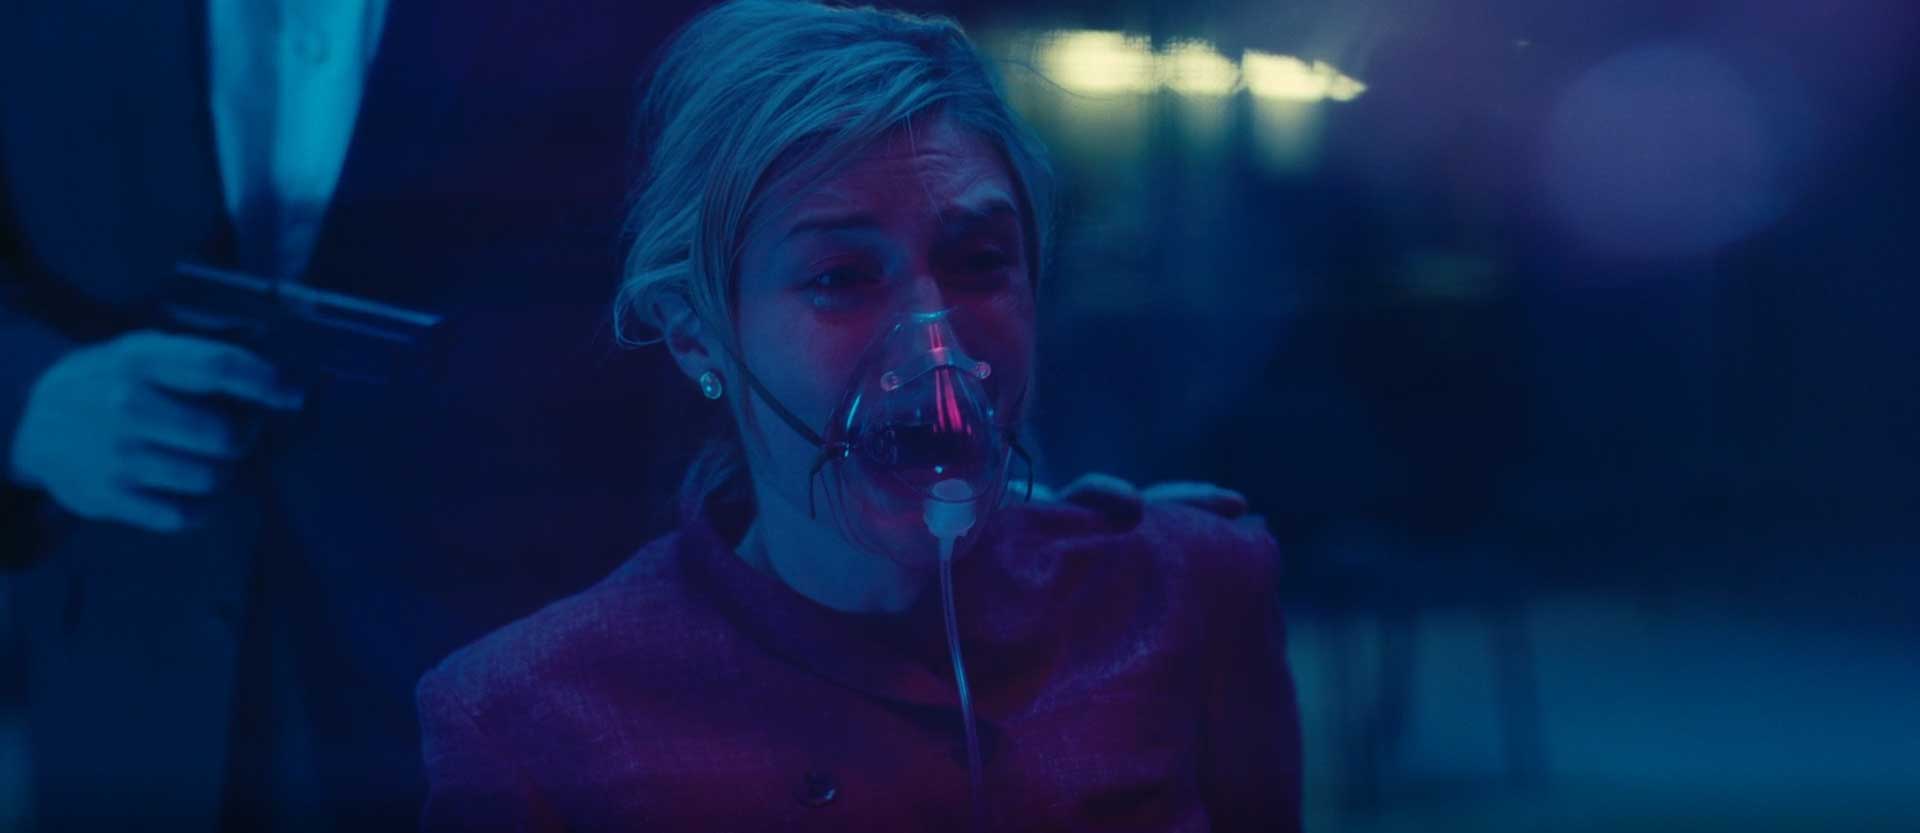 اشک های کت با ماسک اکسیژن در فیلم Tenet کریستوفر نولان با نقش آفرینی عالی الیزابت دبیکی